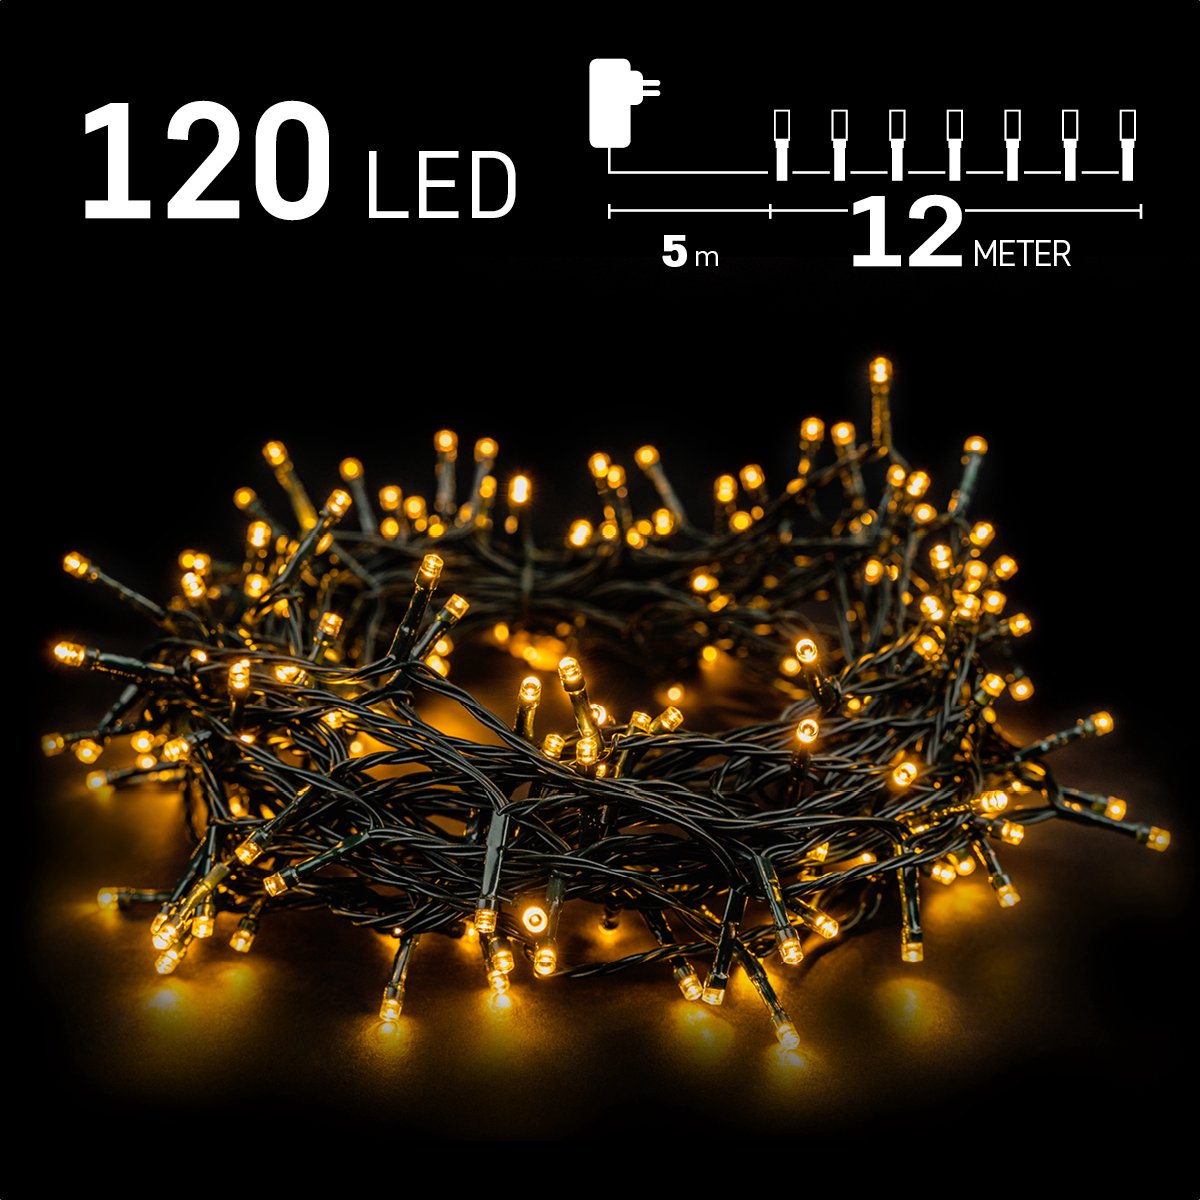 Kerstverlichting buiten - 12 meter 120 LED - Warm Wit - Lichtsnoer - IP44 Stekker met timerfunctie - Kerstboomverlichting - geschikt voor binnen en buiten - kerstverlichting led